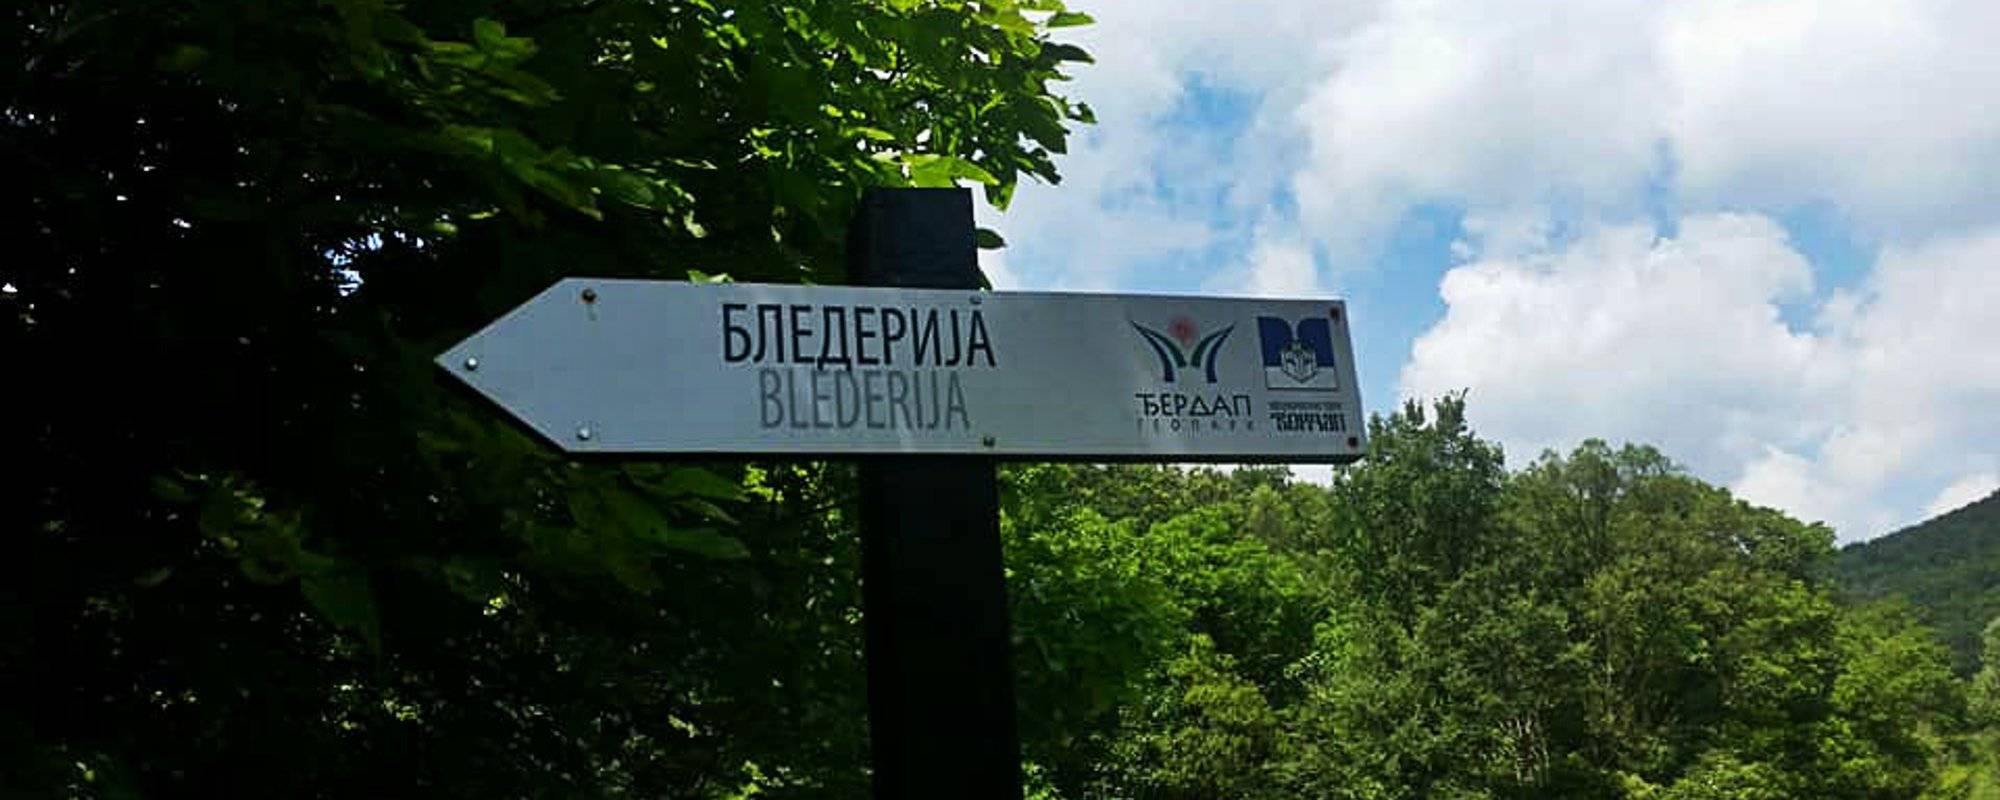 [TRAVELGEM] Blederija Waterfall in Serbia